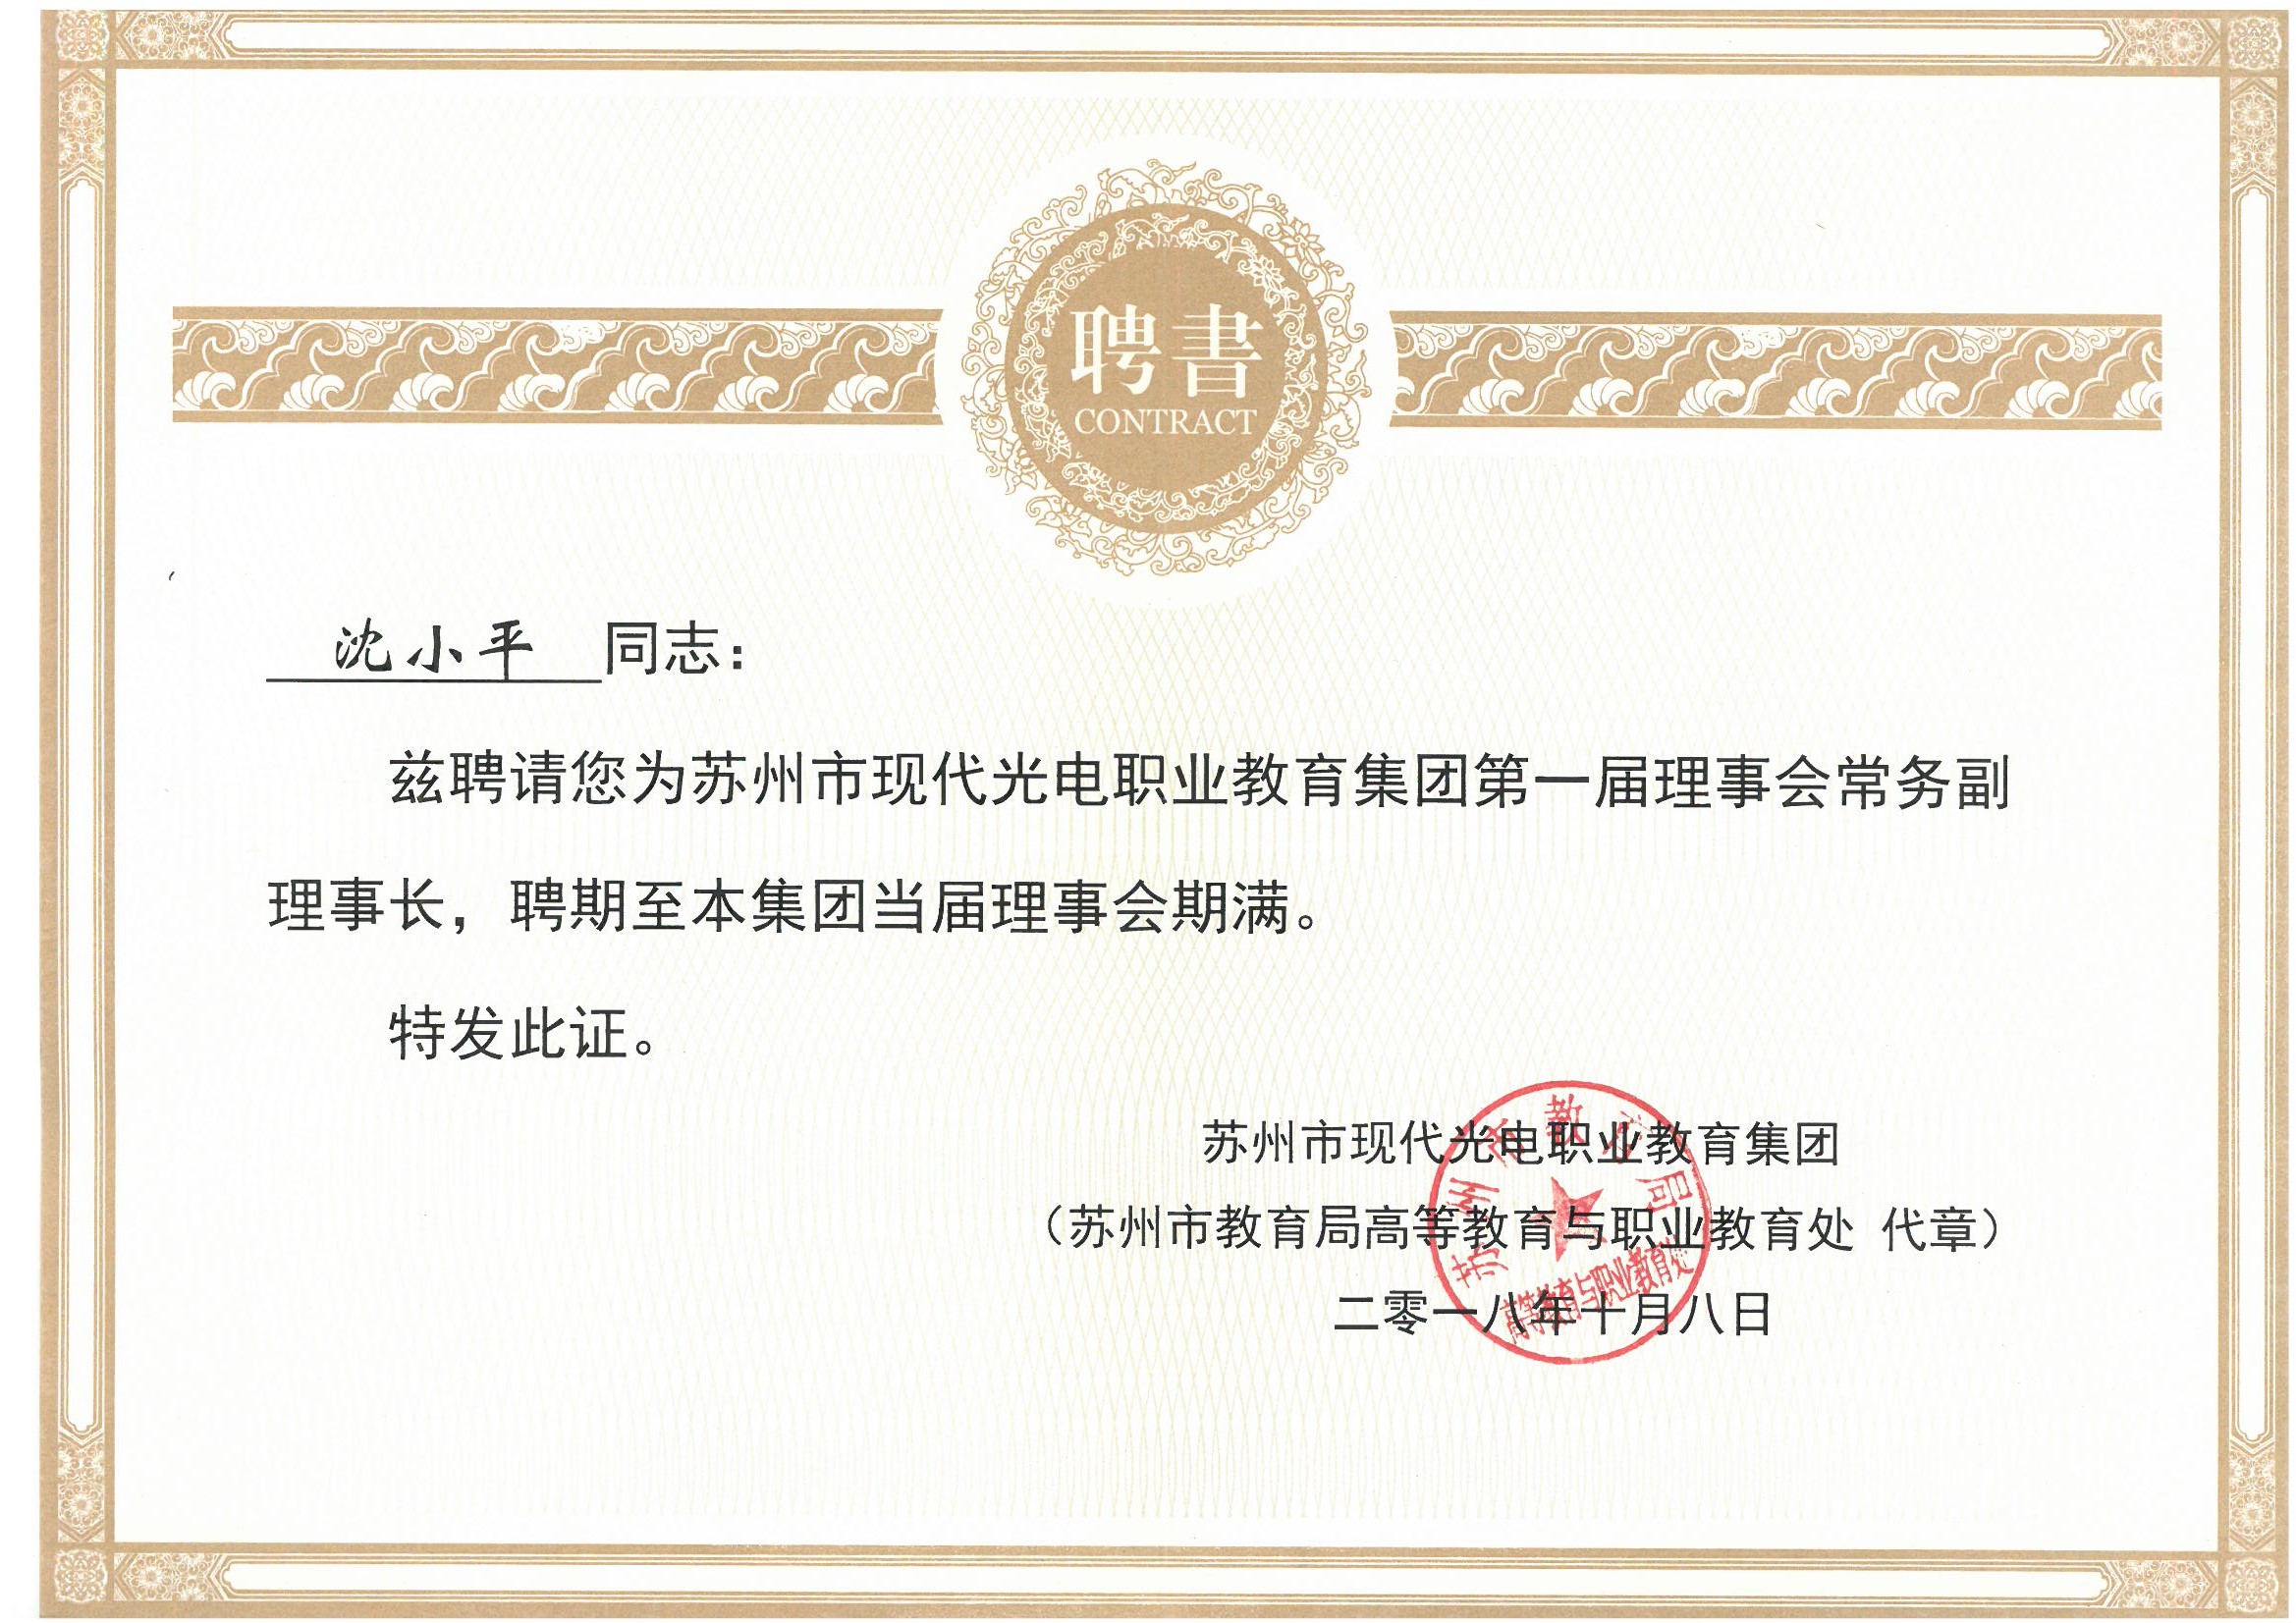 董事长沈小平被聘为“苏州市现代光电职业教育集团第一届理事会常务副理事长”